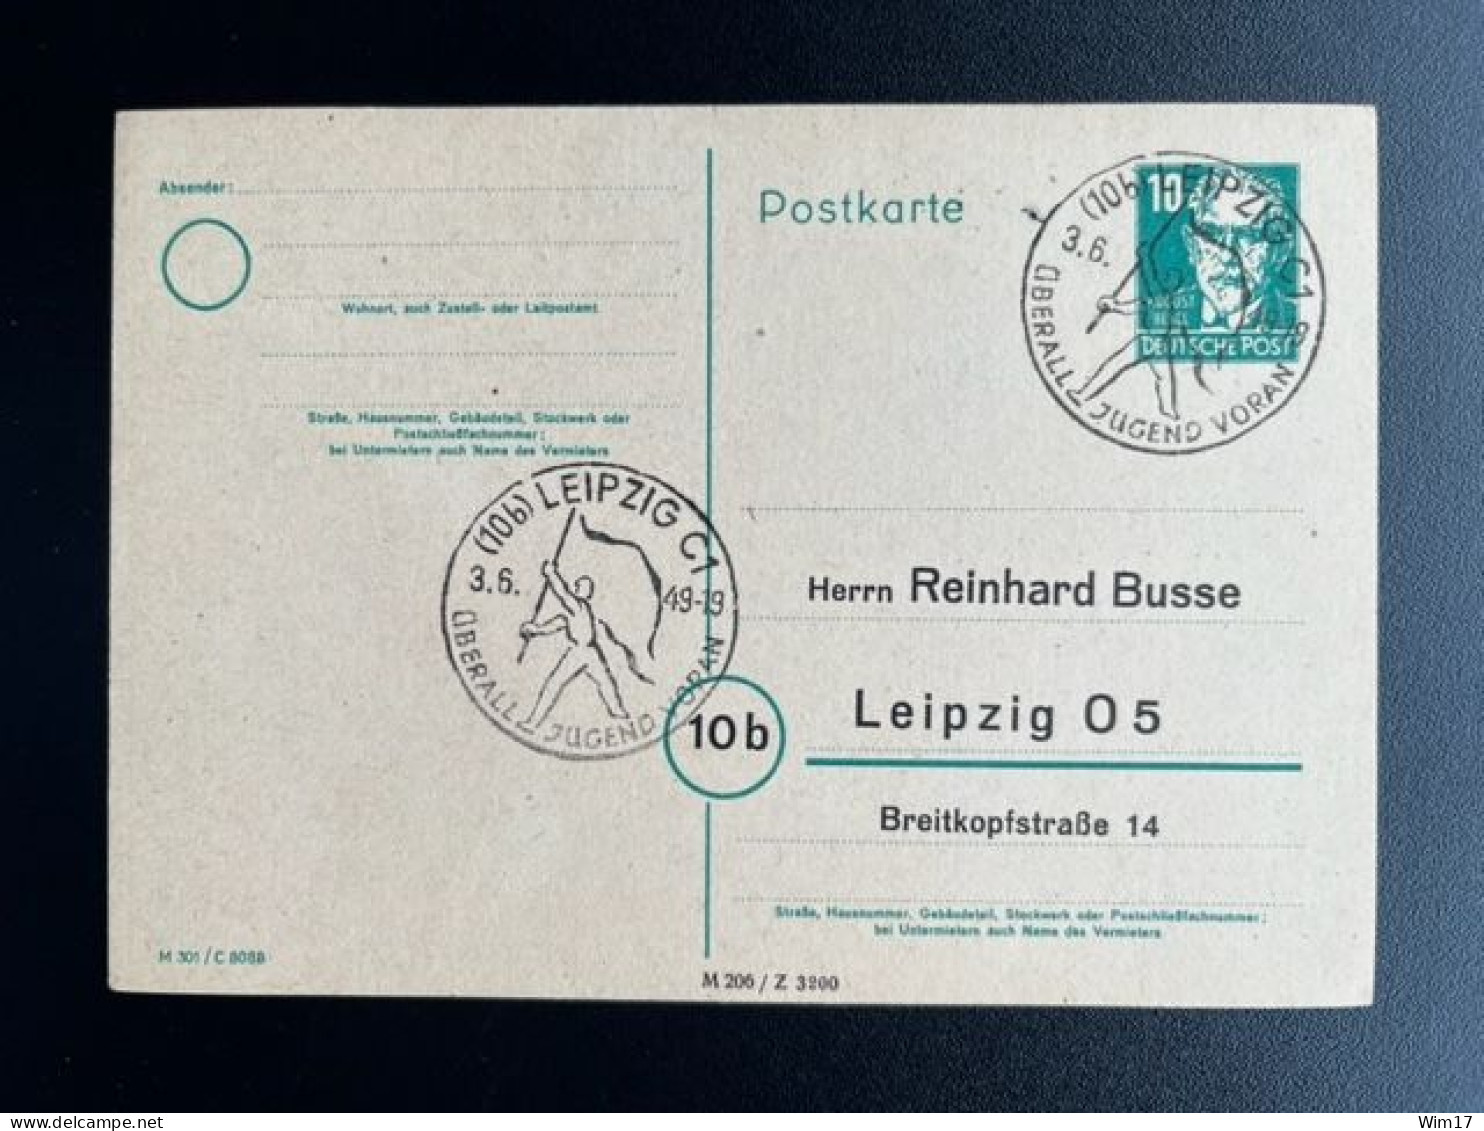 GERMANY 1949 POSTCARD LEIPZIG 03-06-1949 DUITSLAND DEUTSCHLAND SST UBERALL JUGEND VORAN - Postal  Stationery